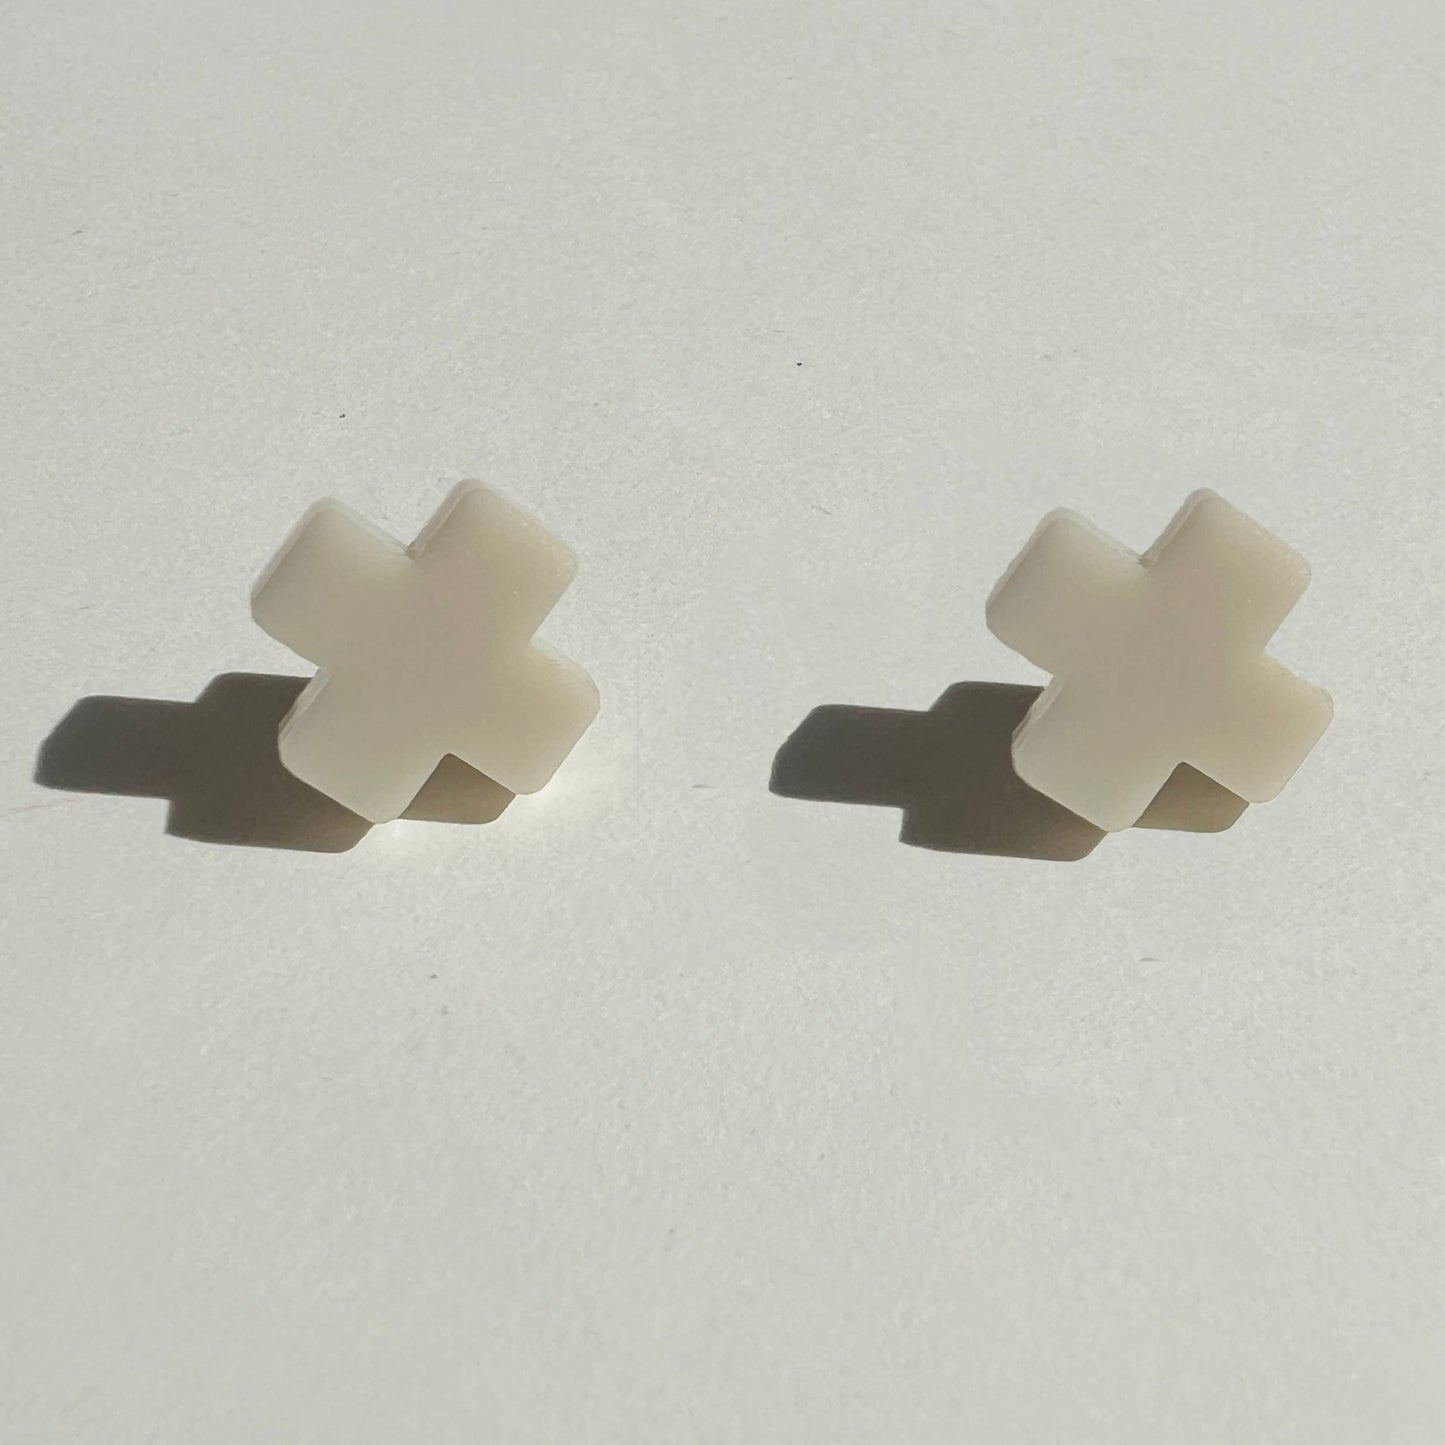 Beige Cross Stud Earrings - Small Cross Earrings, Minimalist